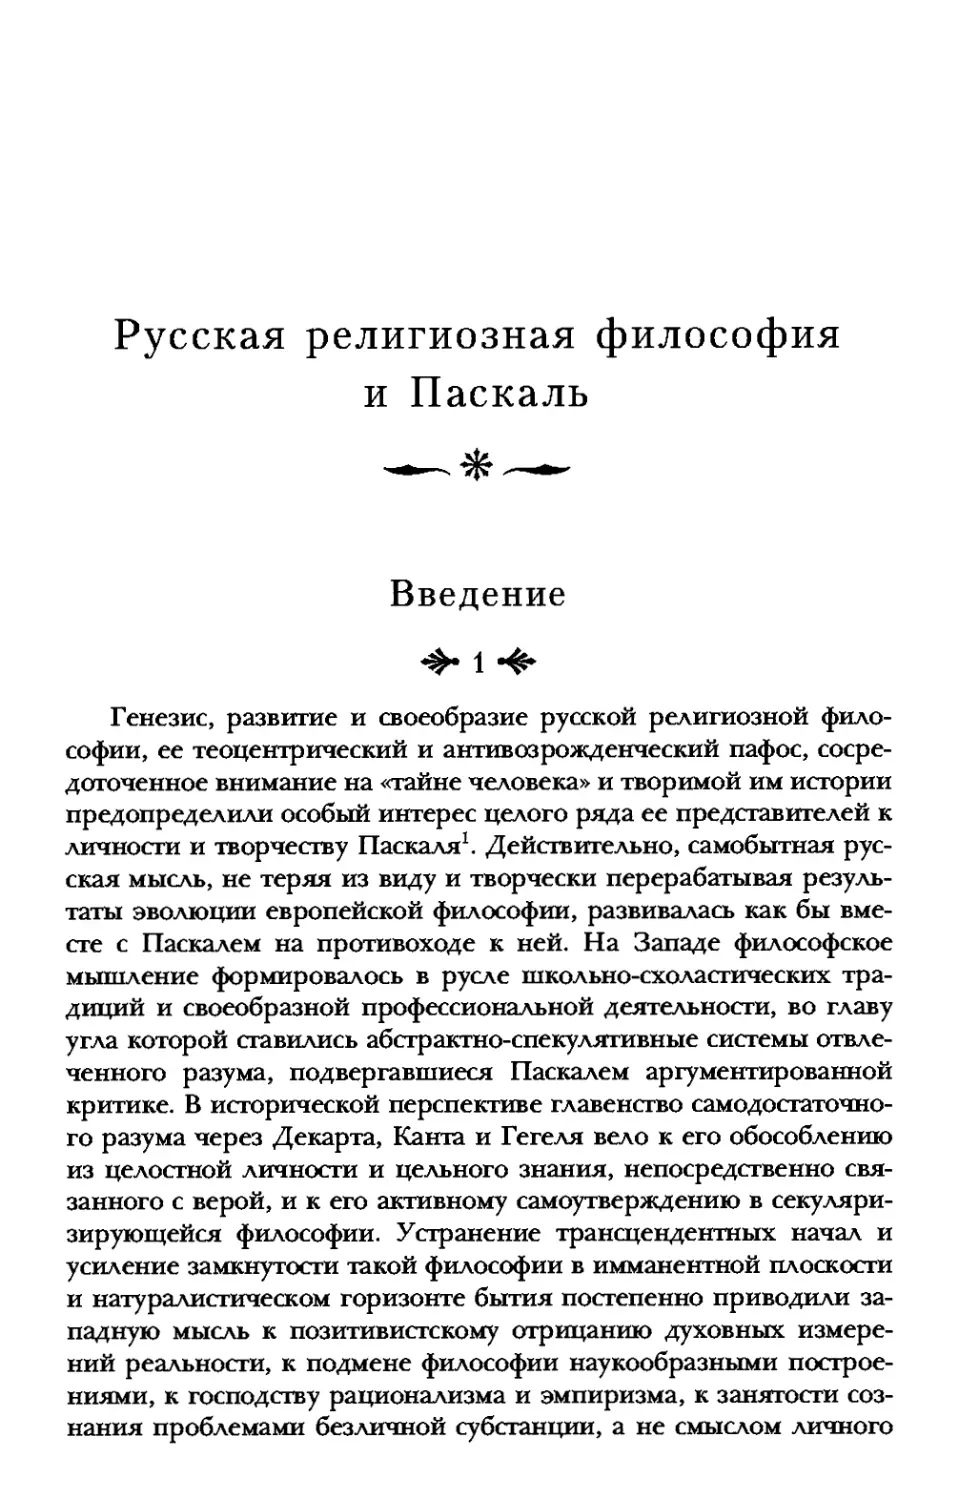 Русская религиозная философия и Паскаль
Введение